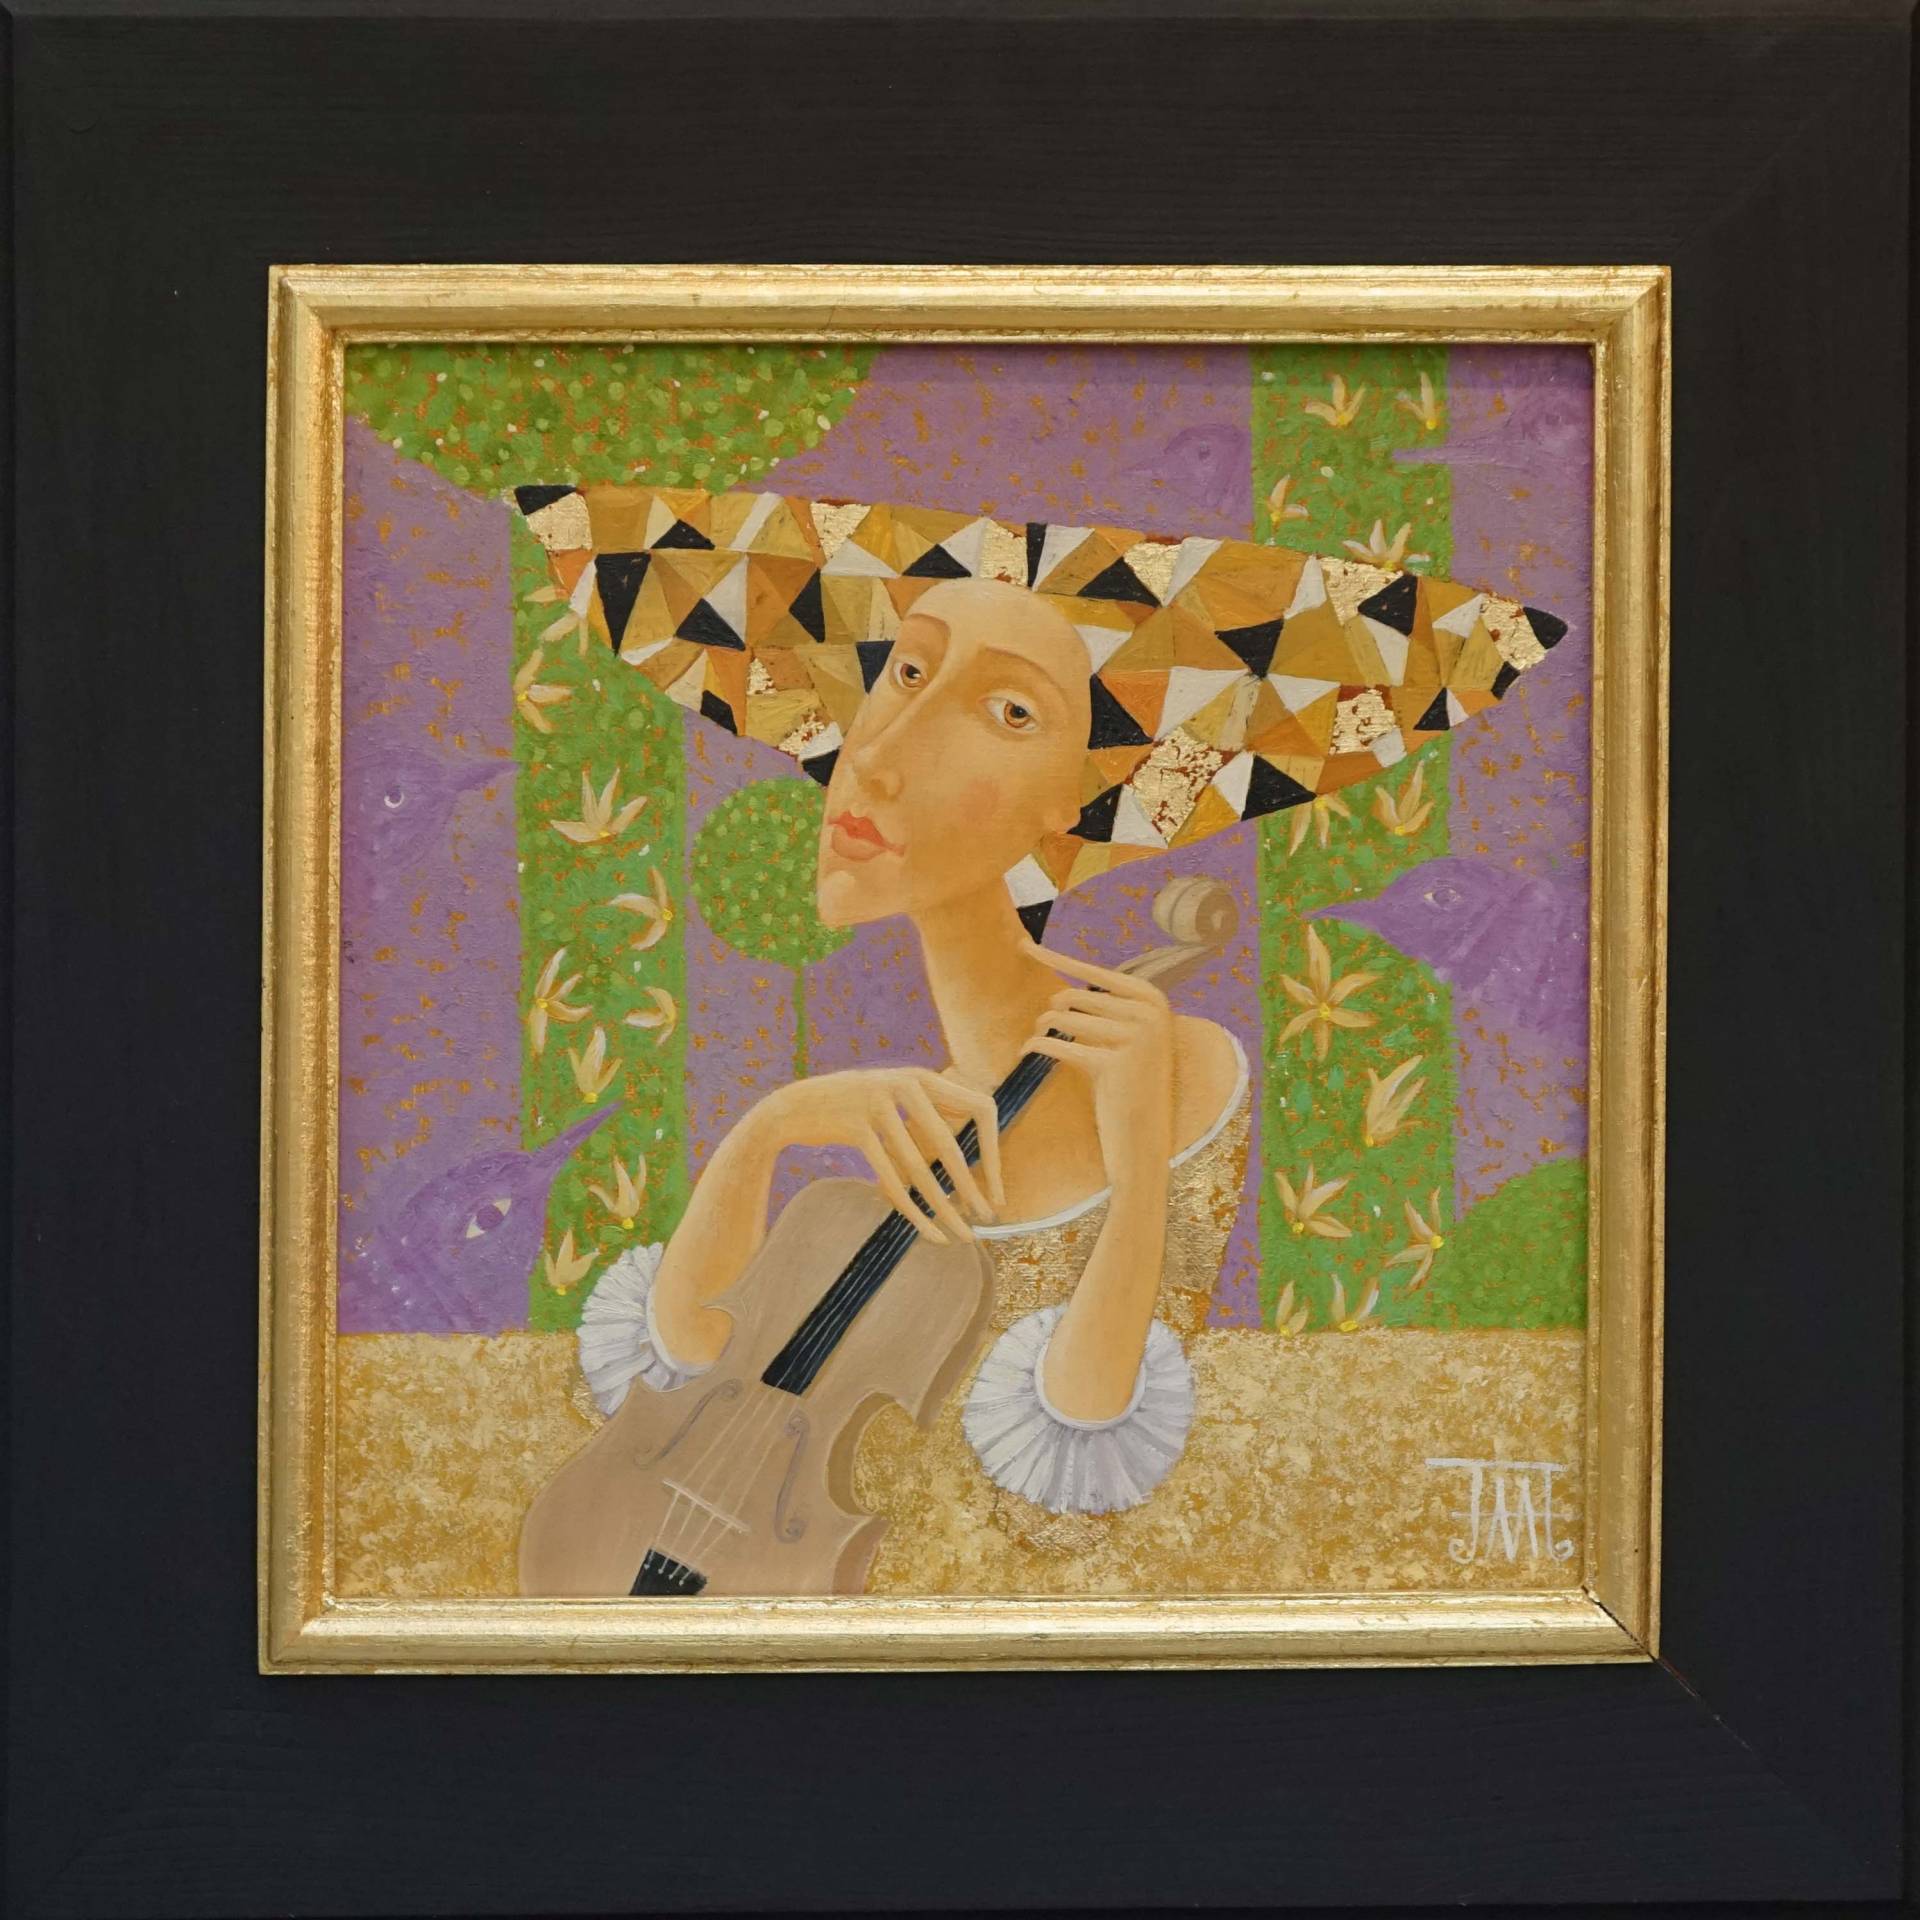 Jasmine - 1, Alla Lipatova, Buy the painting Oil